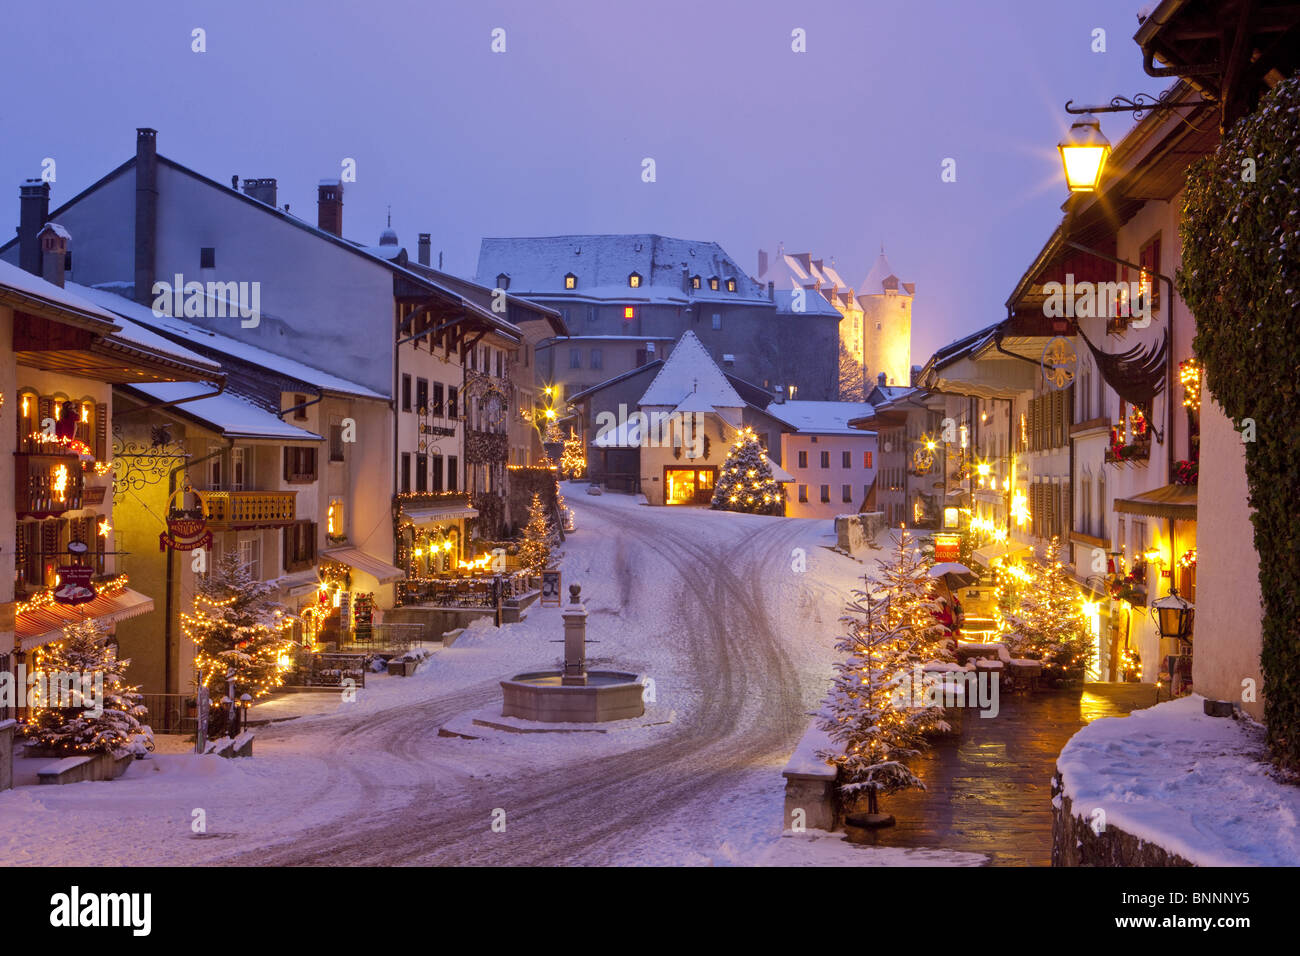 Gruyères FR Weihnachten Beleuchtung Dorf Weihnachten Advent Kanton Fribourg  Freiburg Schweiz Beleuchtung Untersuchung Abend Stockfotografie - Alamy